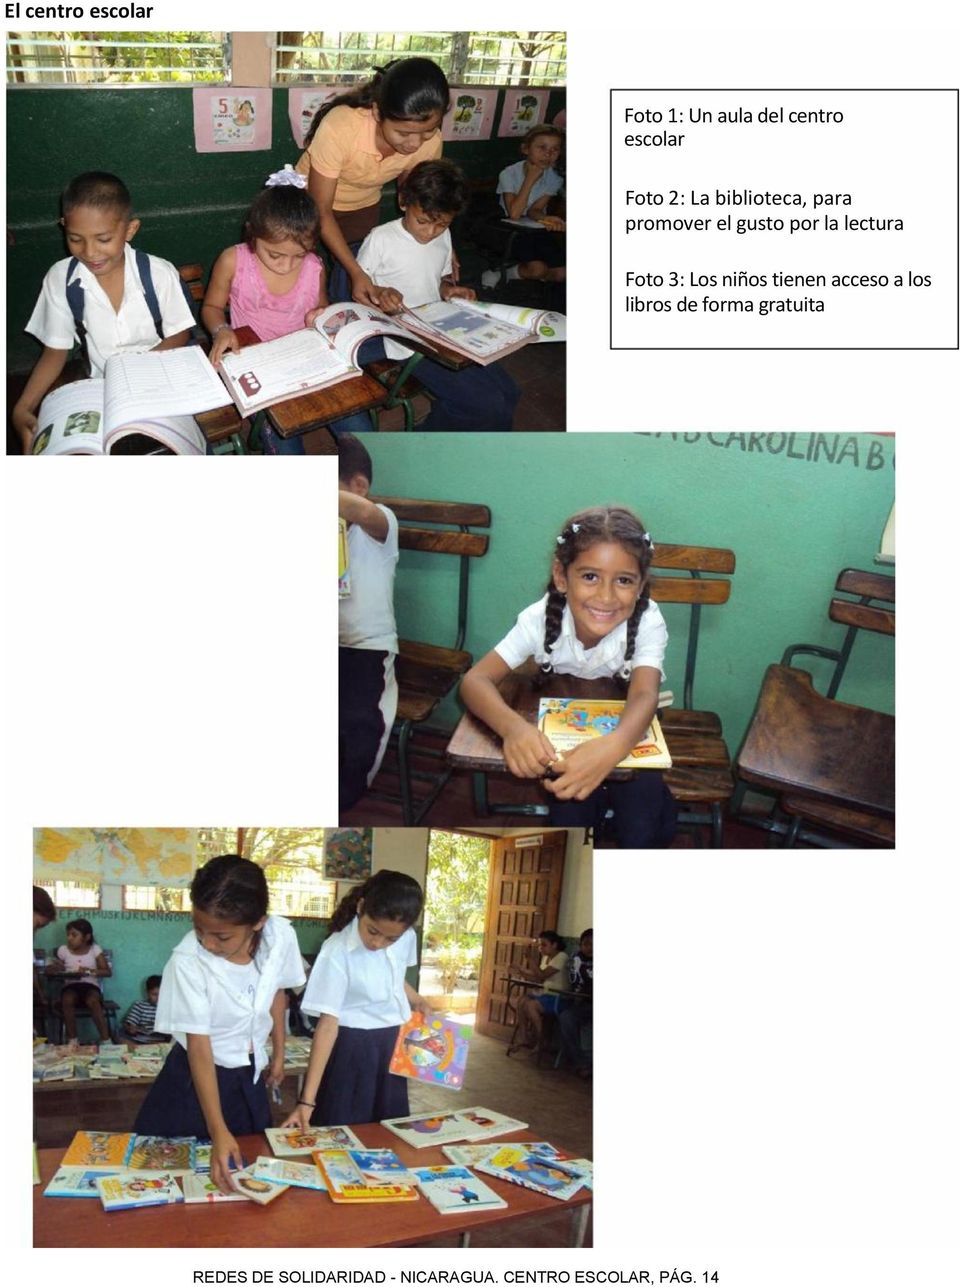 Foto 3: Los niños tienen acceso a los libros de forma